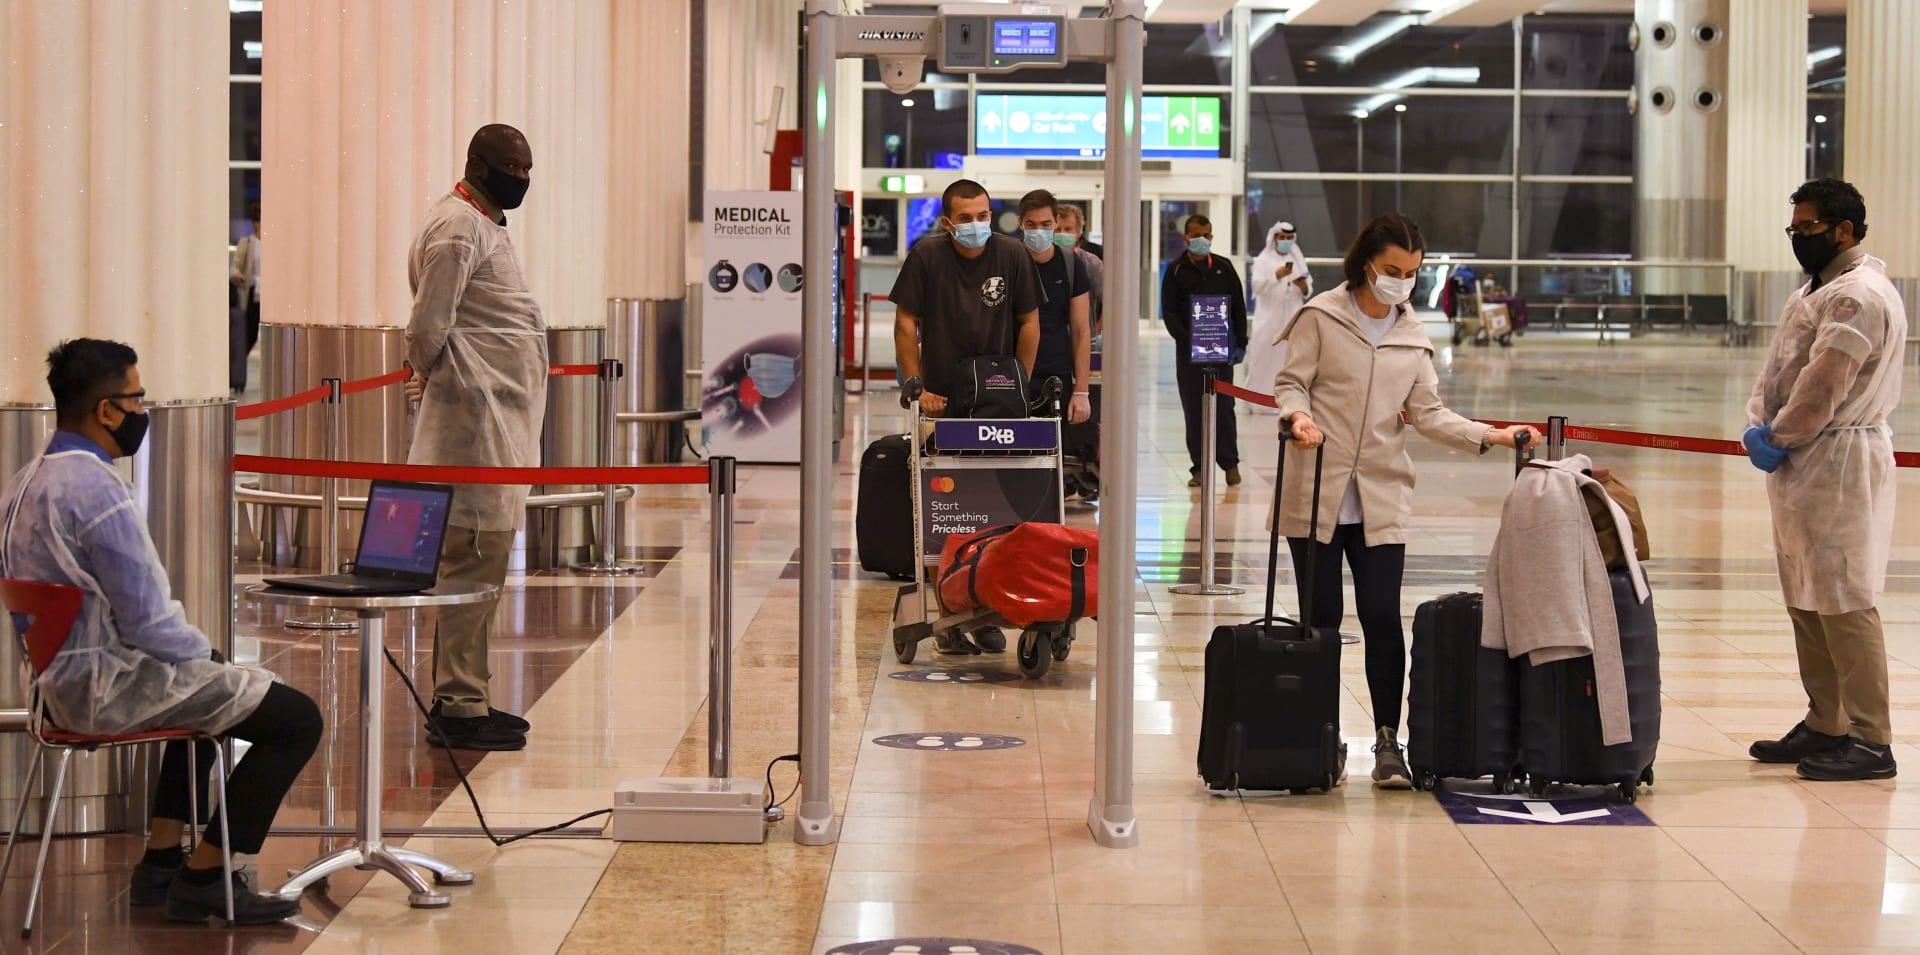 الإمارات تستثني فئات جديدة من المسافرين من بعض الدول التي منع القدوم منها.. من هم؟